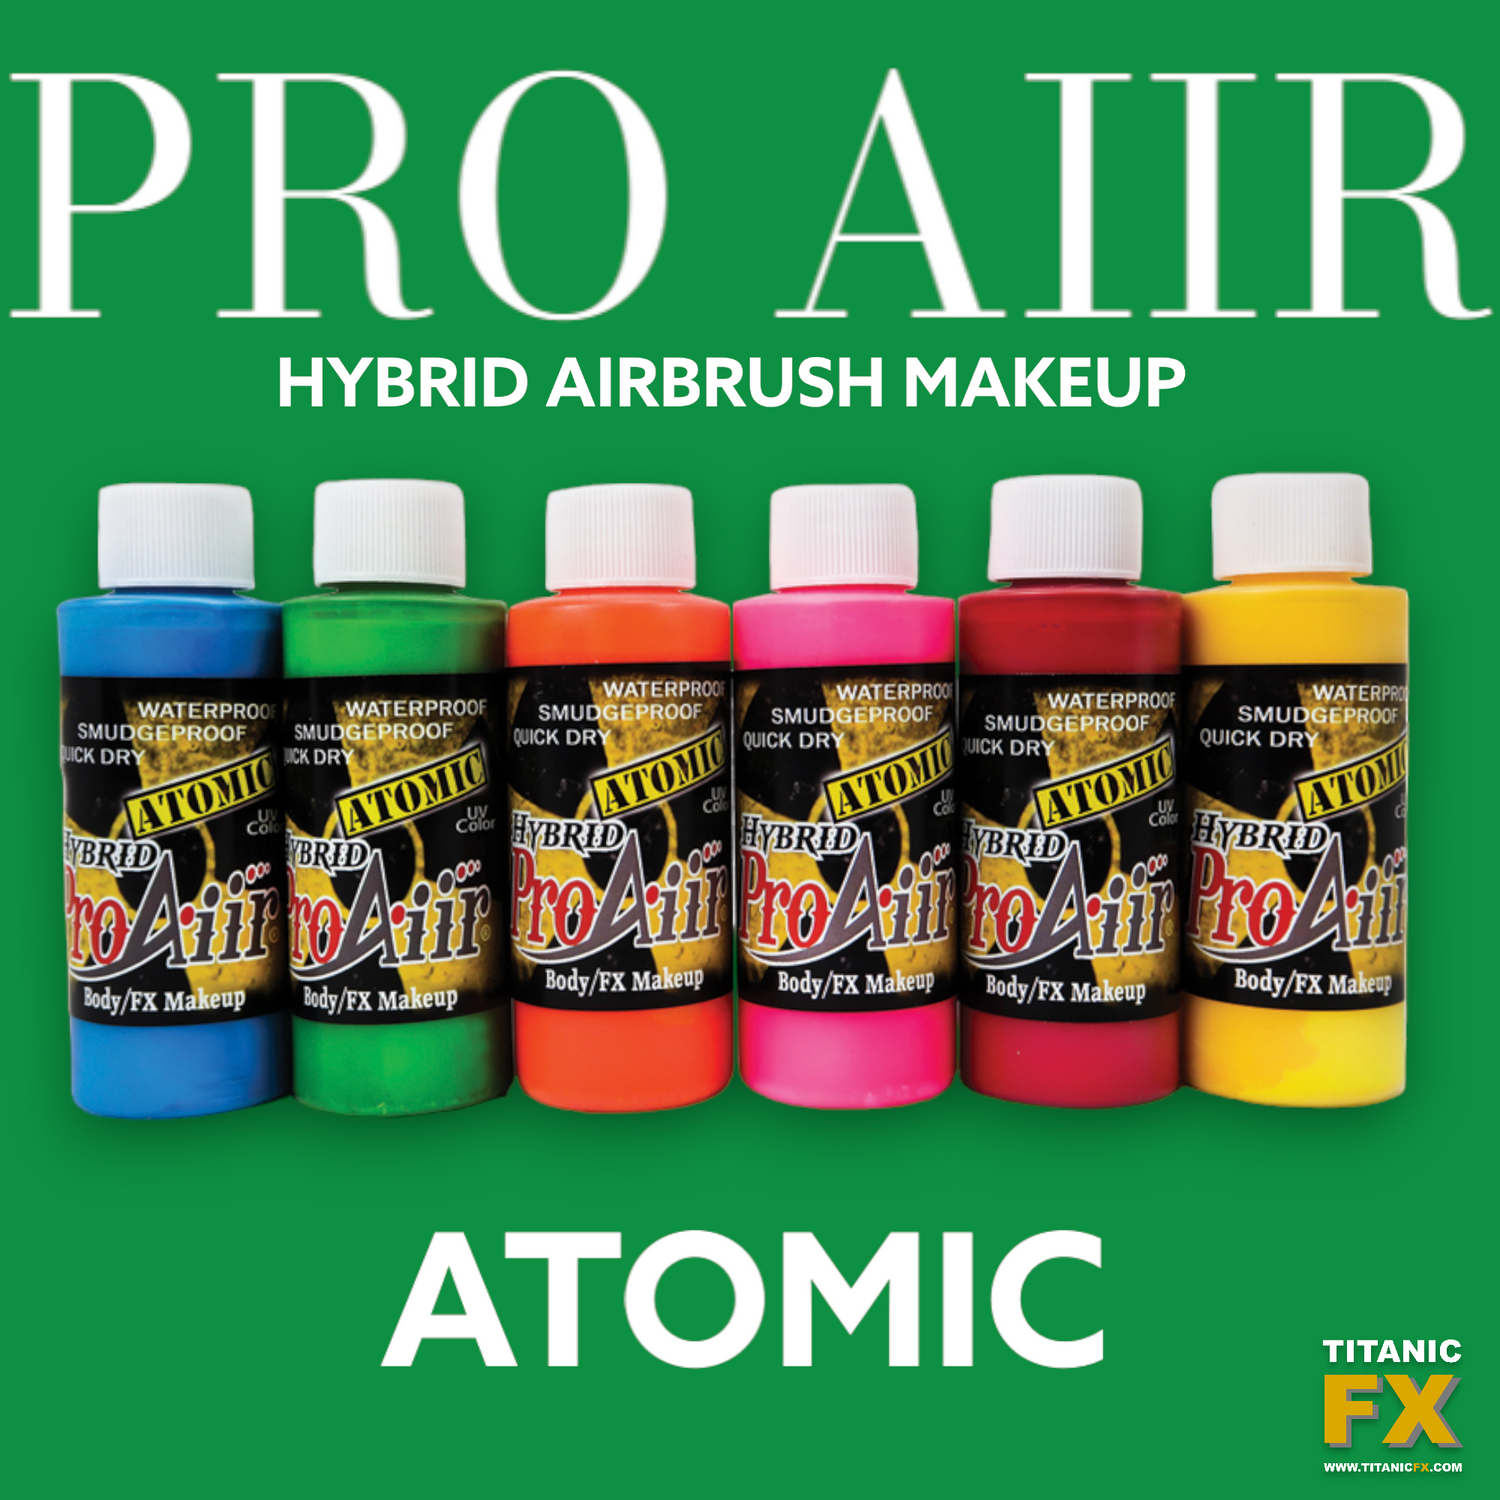 Pro Aiir Hybrid Airbrush Makeup Kit - 'Atomic'